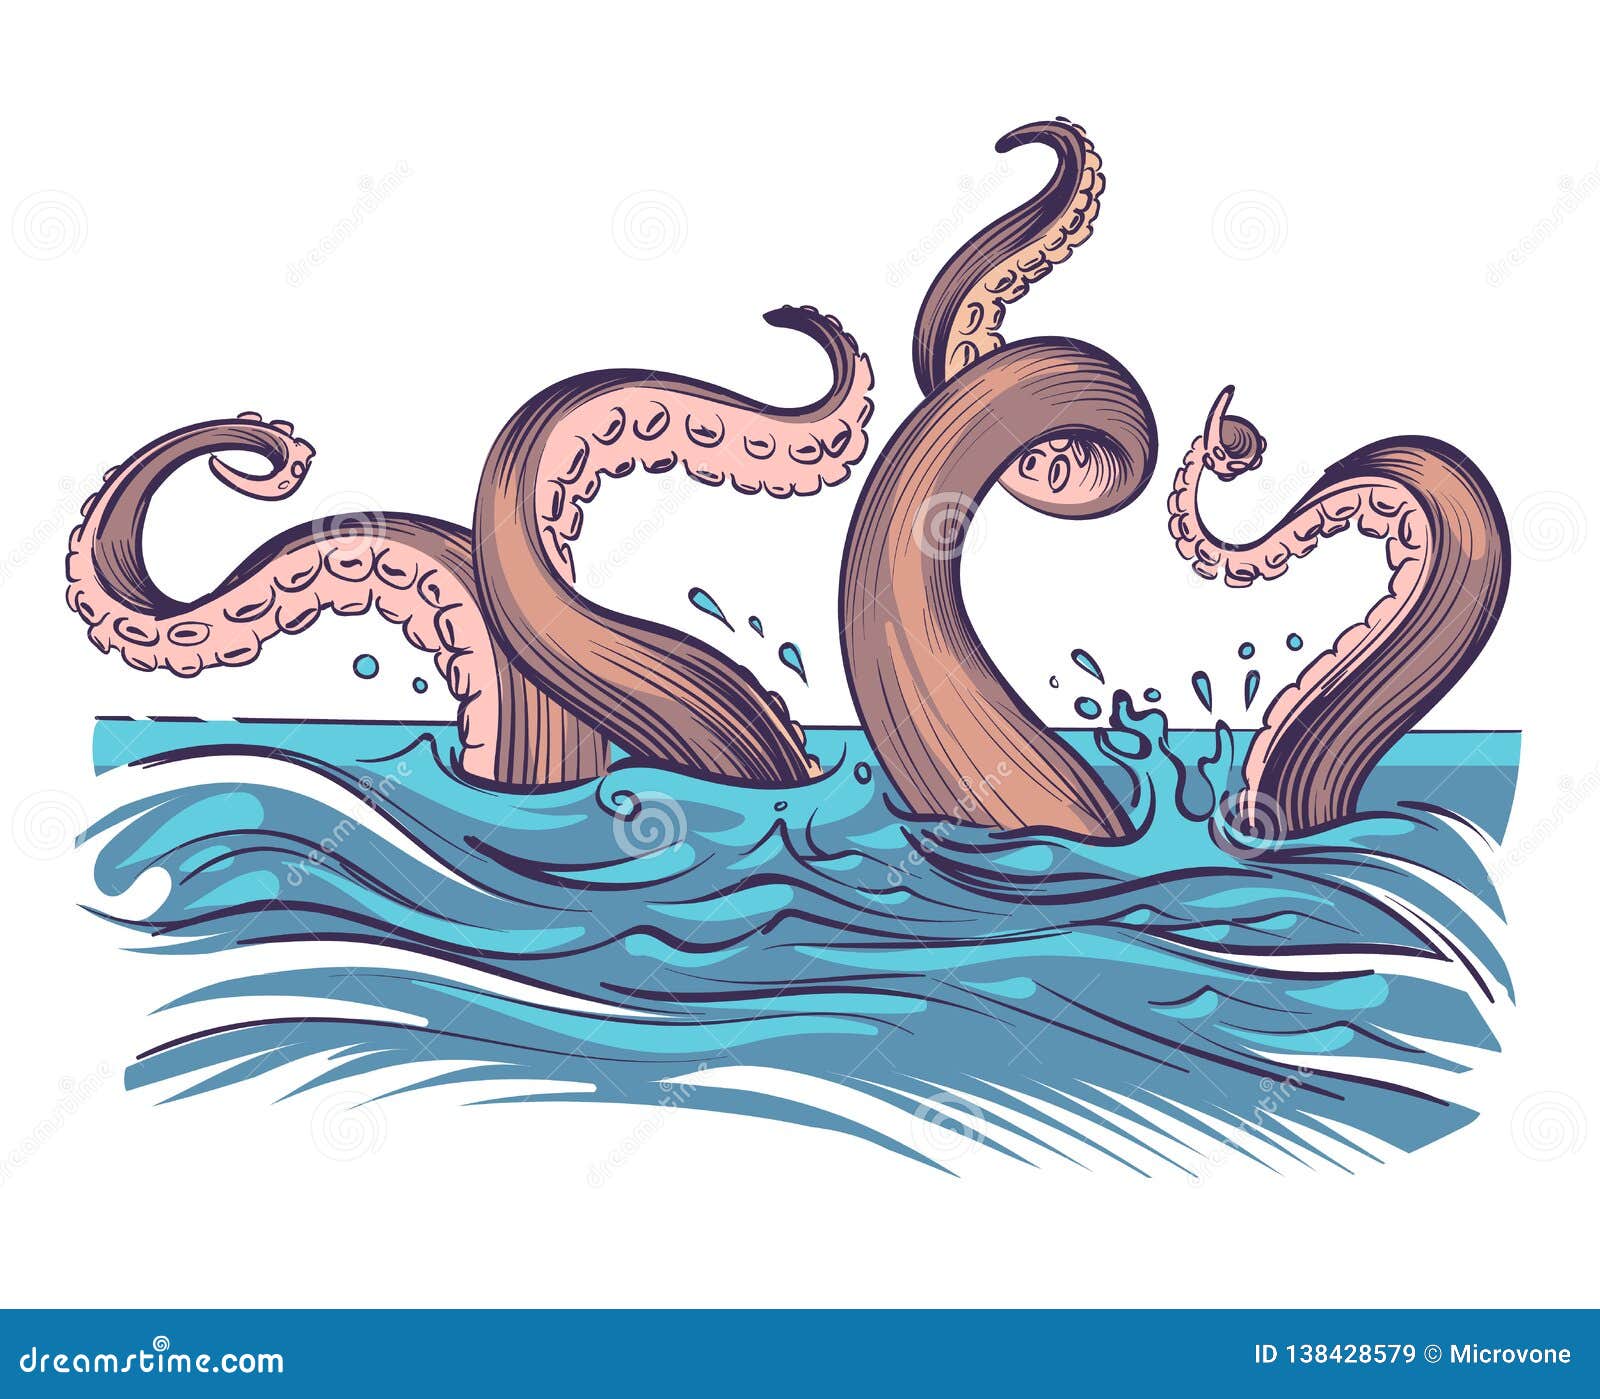 octopus tentacle in sea. underwater ocean invertebrate monster. cartoon japanese squid cuttlefish  